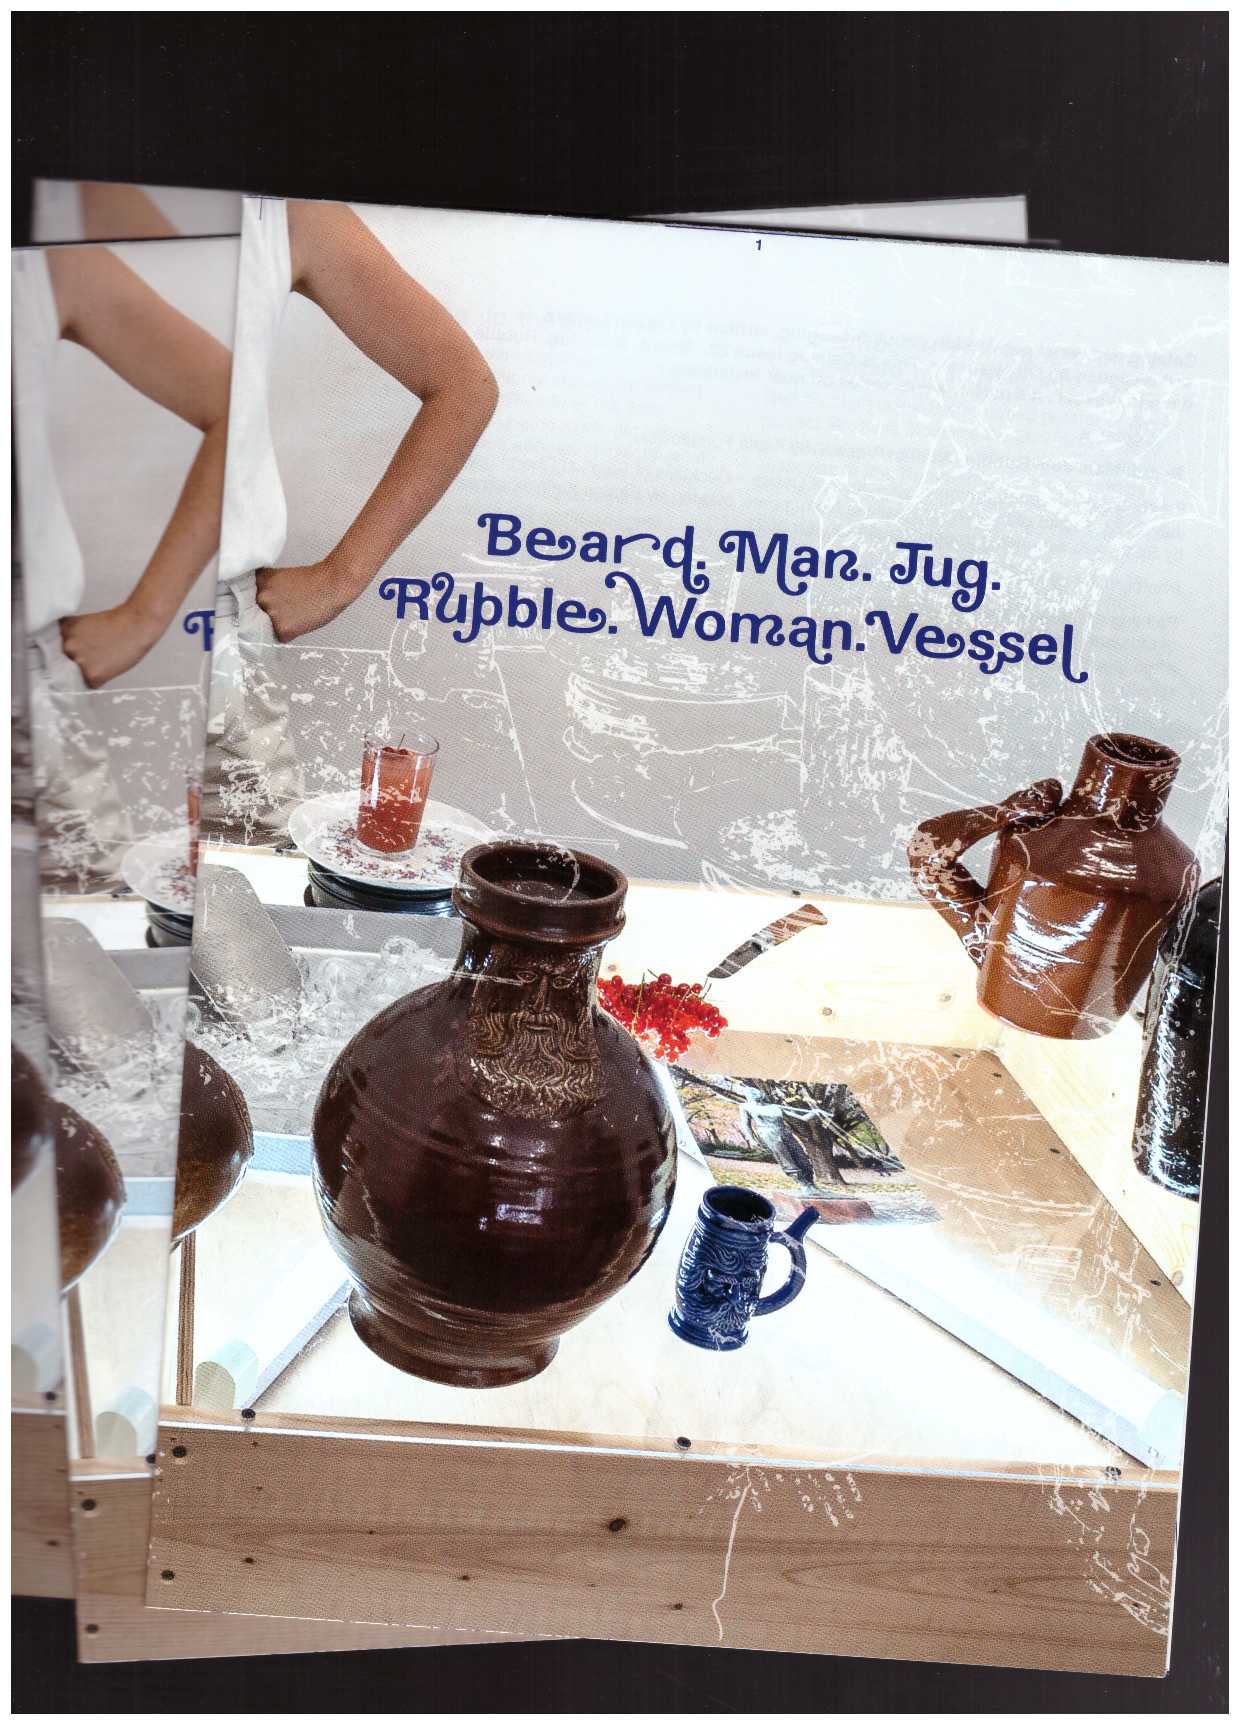 LAHAYE, Lieven - Catalog #22 “Beard. Man. Jug. Rubble. Woman. Vessel”